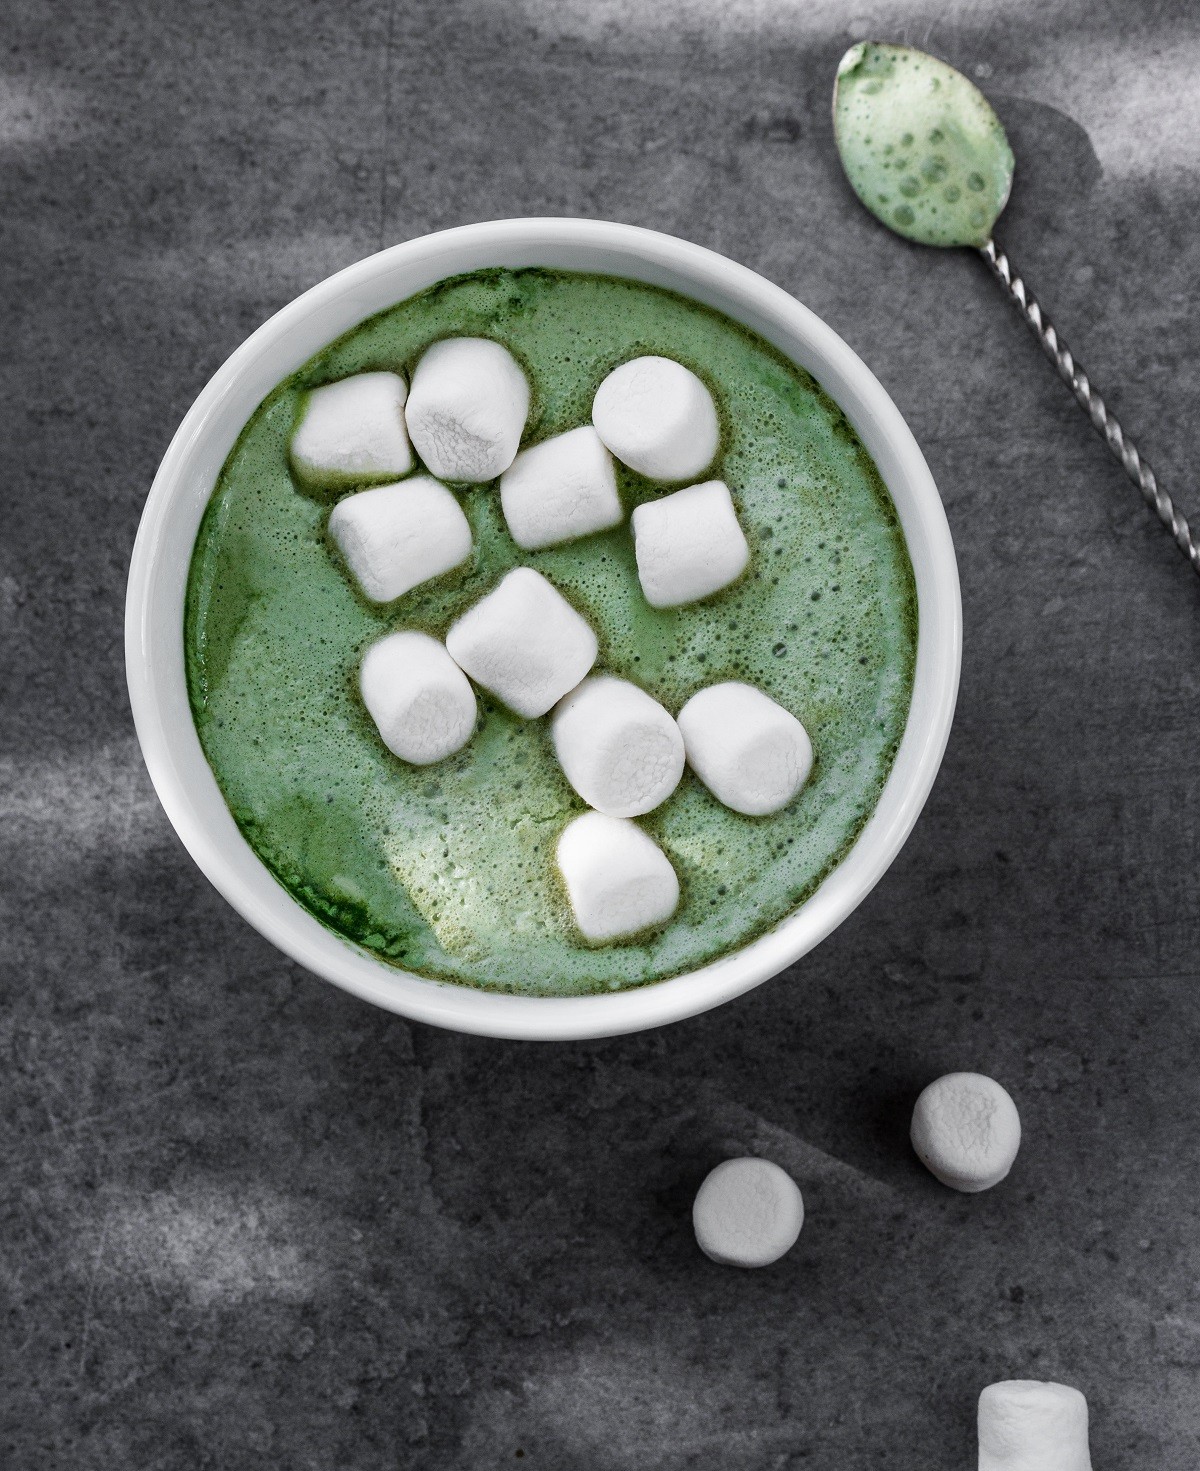 Matcha latte with marshmallows